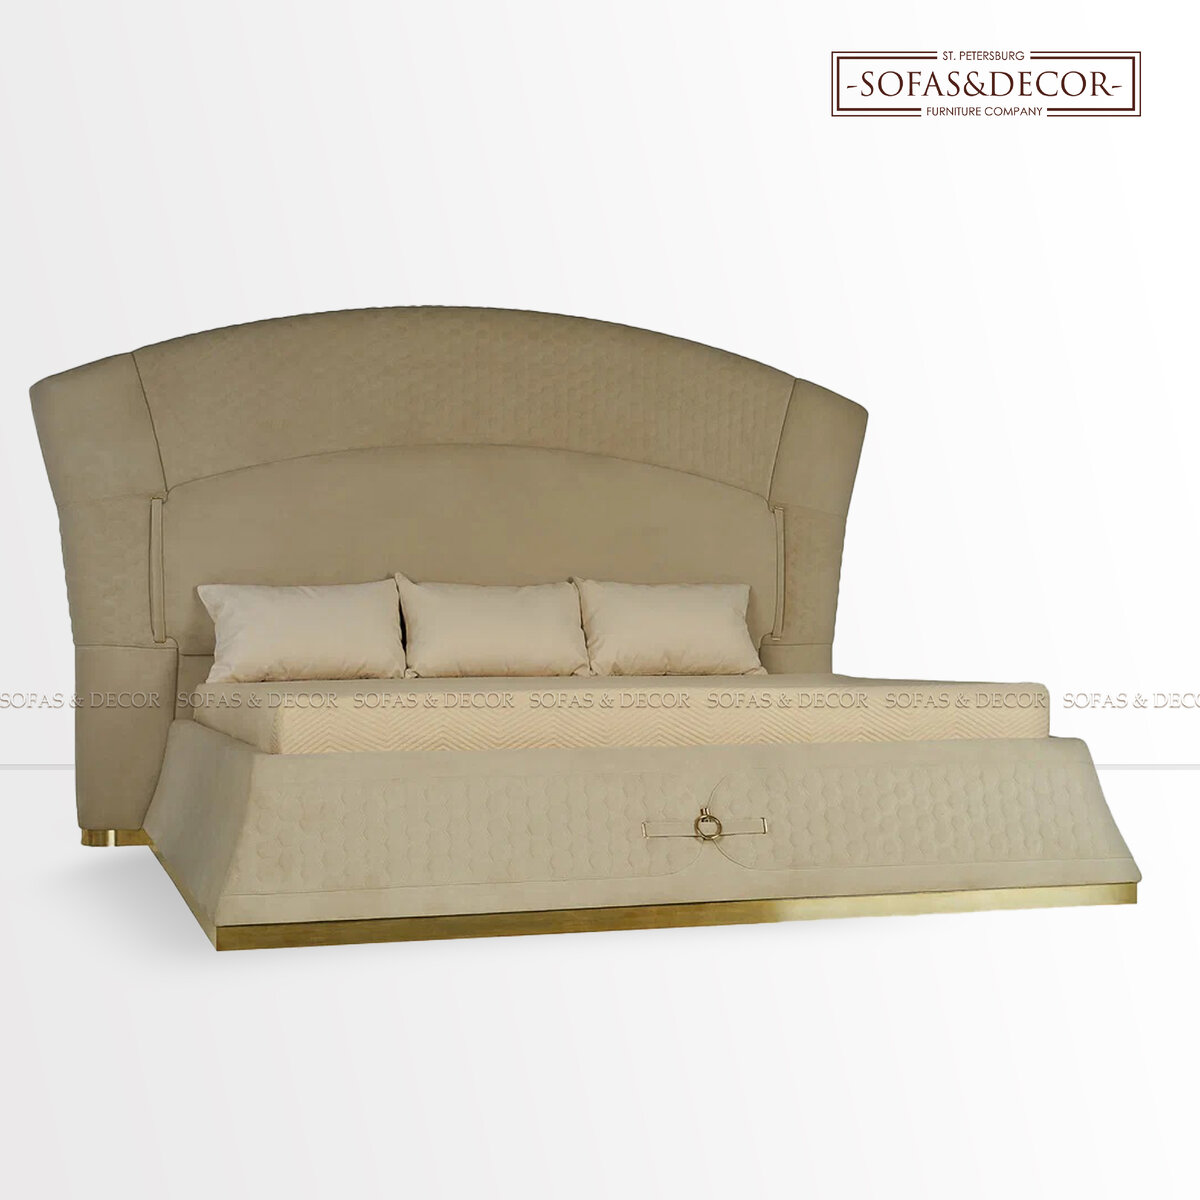 Кровать Sofas&Decor в обивке из велюра.